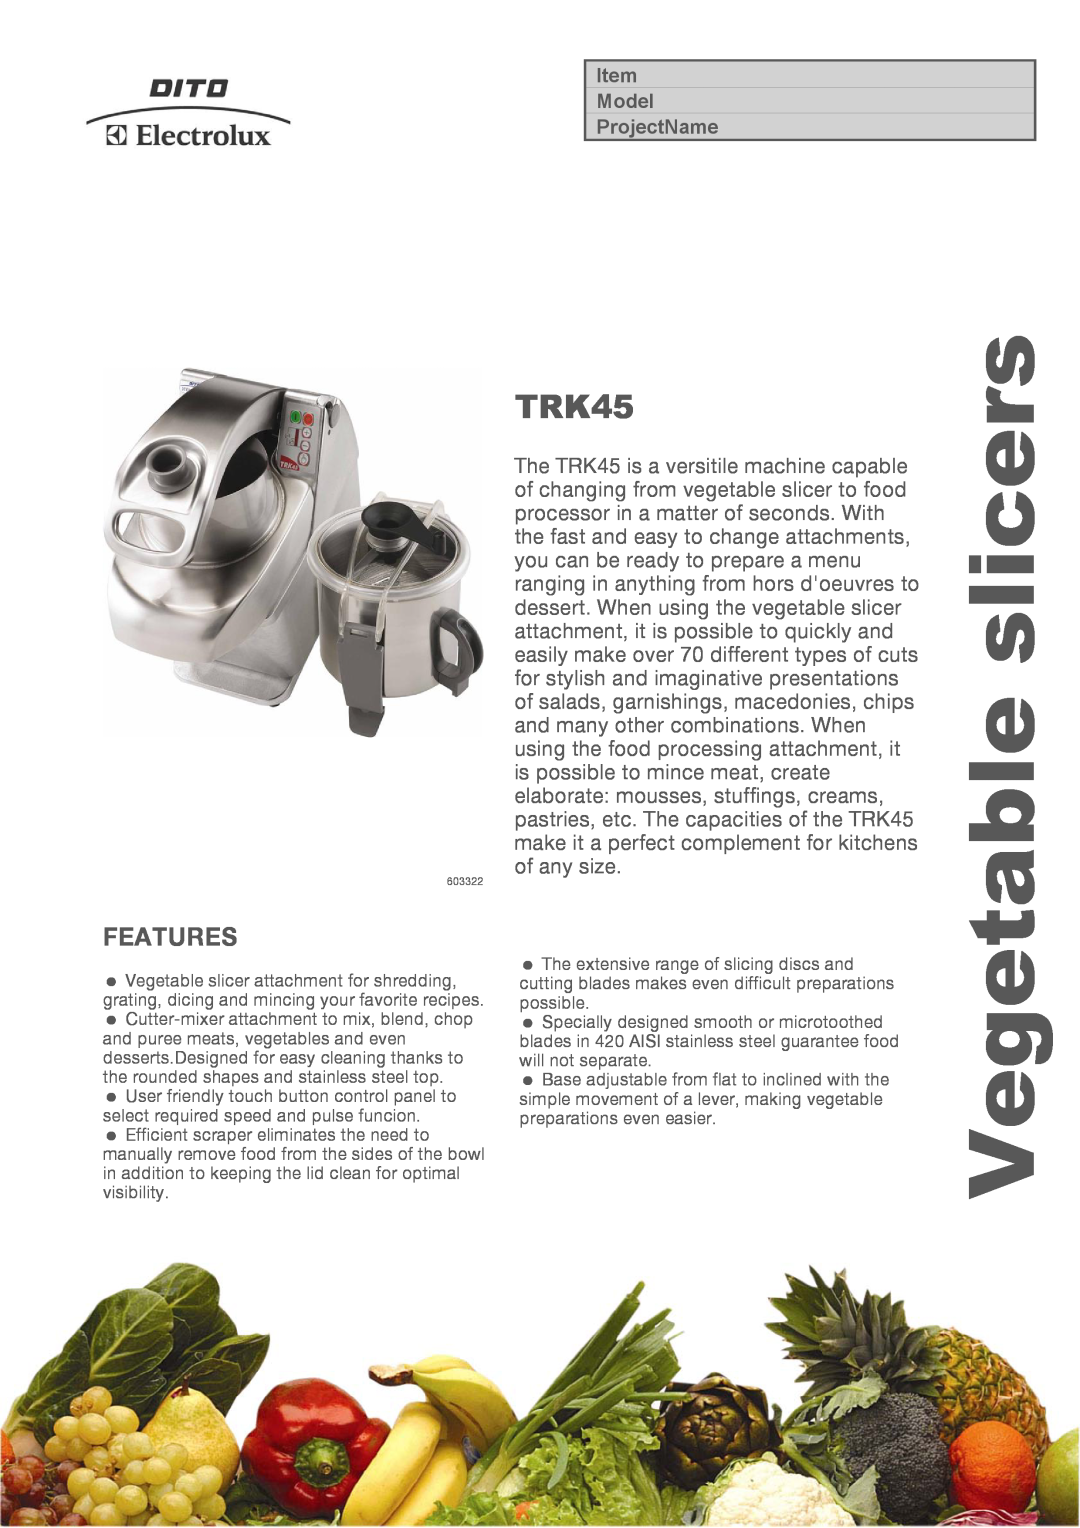 Electrolux 603322, TRK45VV manual slicers, Vegetable, Features 